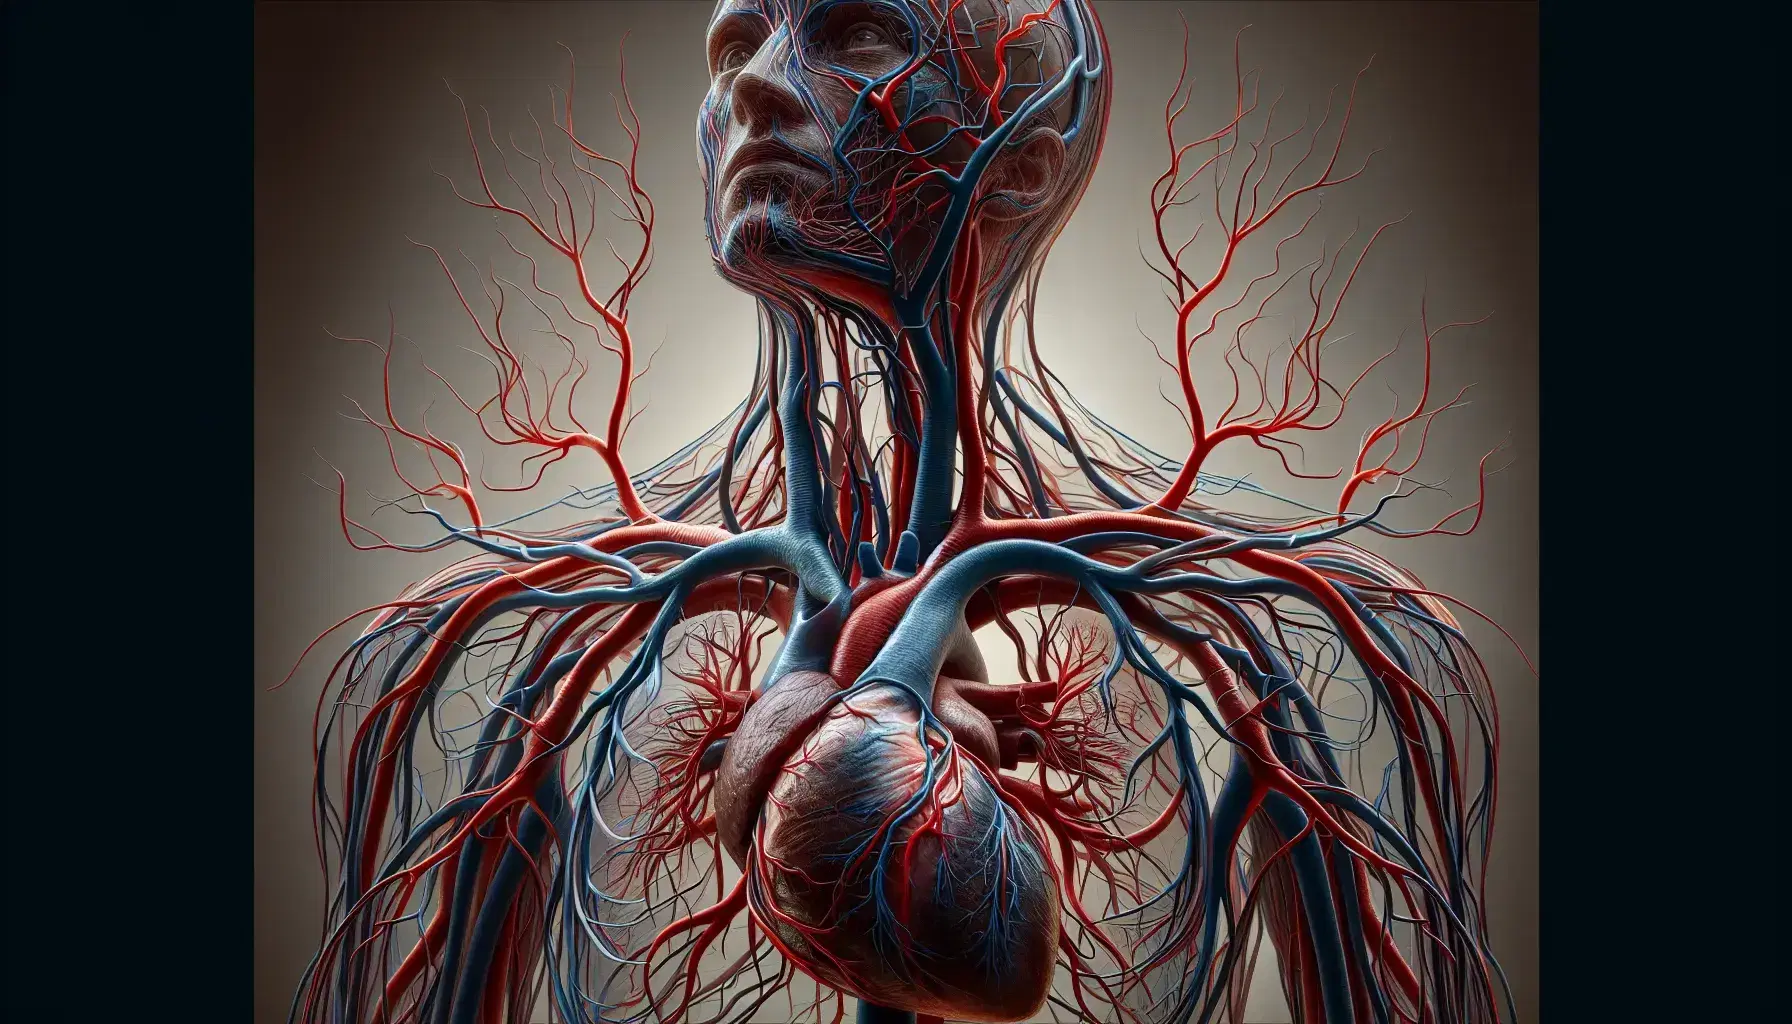 Sistema circulatorio humano detallado con corazón central y red de venas azules y arterias rojas extendiéndose hacia cabeza y extremidades.